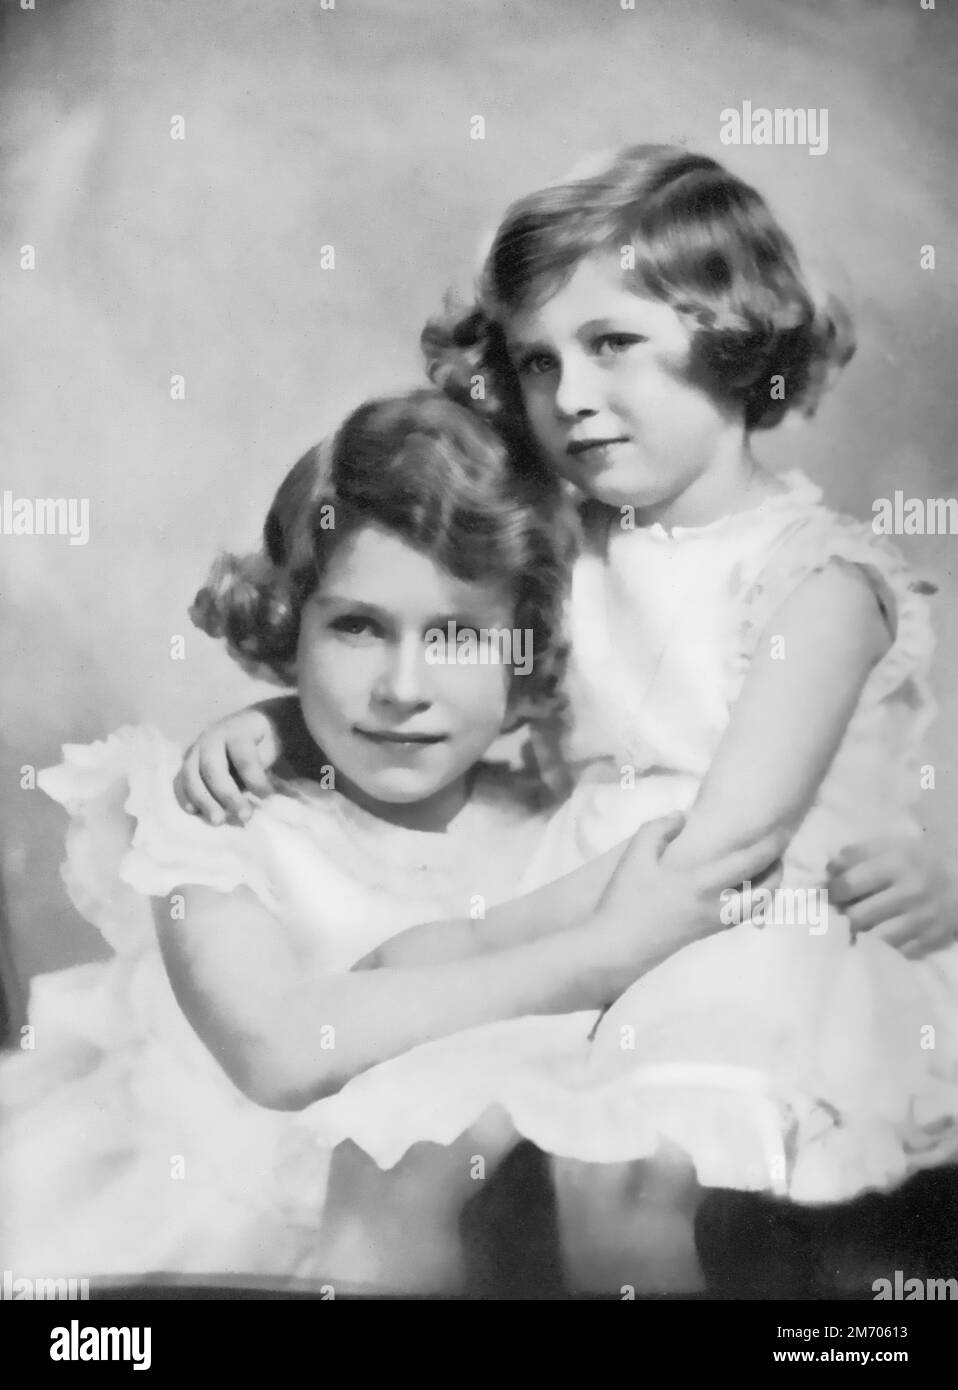 Principesse Elisabetta e Margherita, c1937. La principessa Elisabetta, successivamente la regina Elisabetta II (1926-2022) e la principessa Margherita, successivamente la principessa Margherita, contessa di Snowdon (1930-2002), fotografarono all'età di circa 11 e 7 anni. Foto Stock